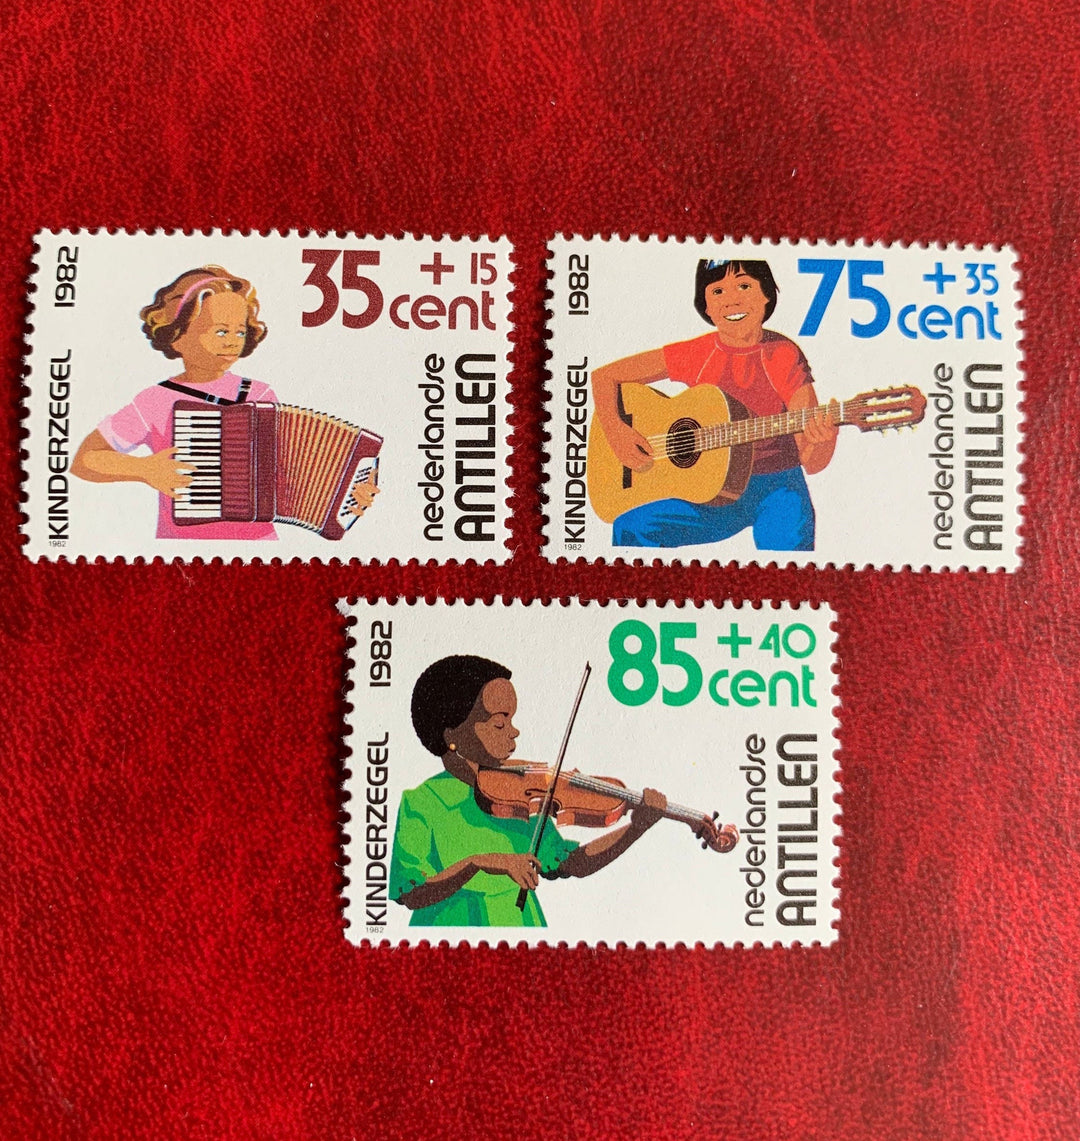 Netherlands Antilles- Original Vintage Postage Stamps -1983 Children and Music